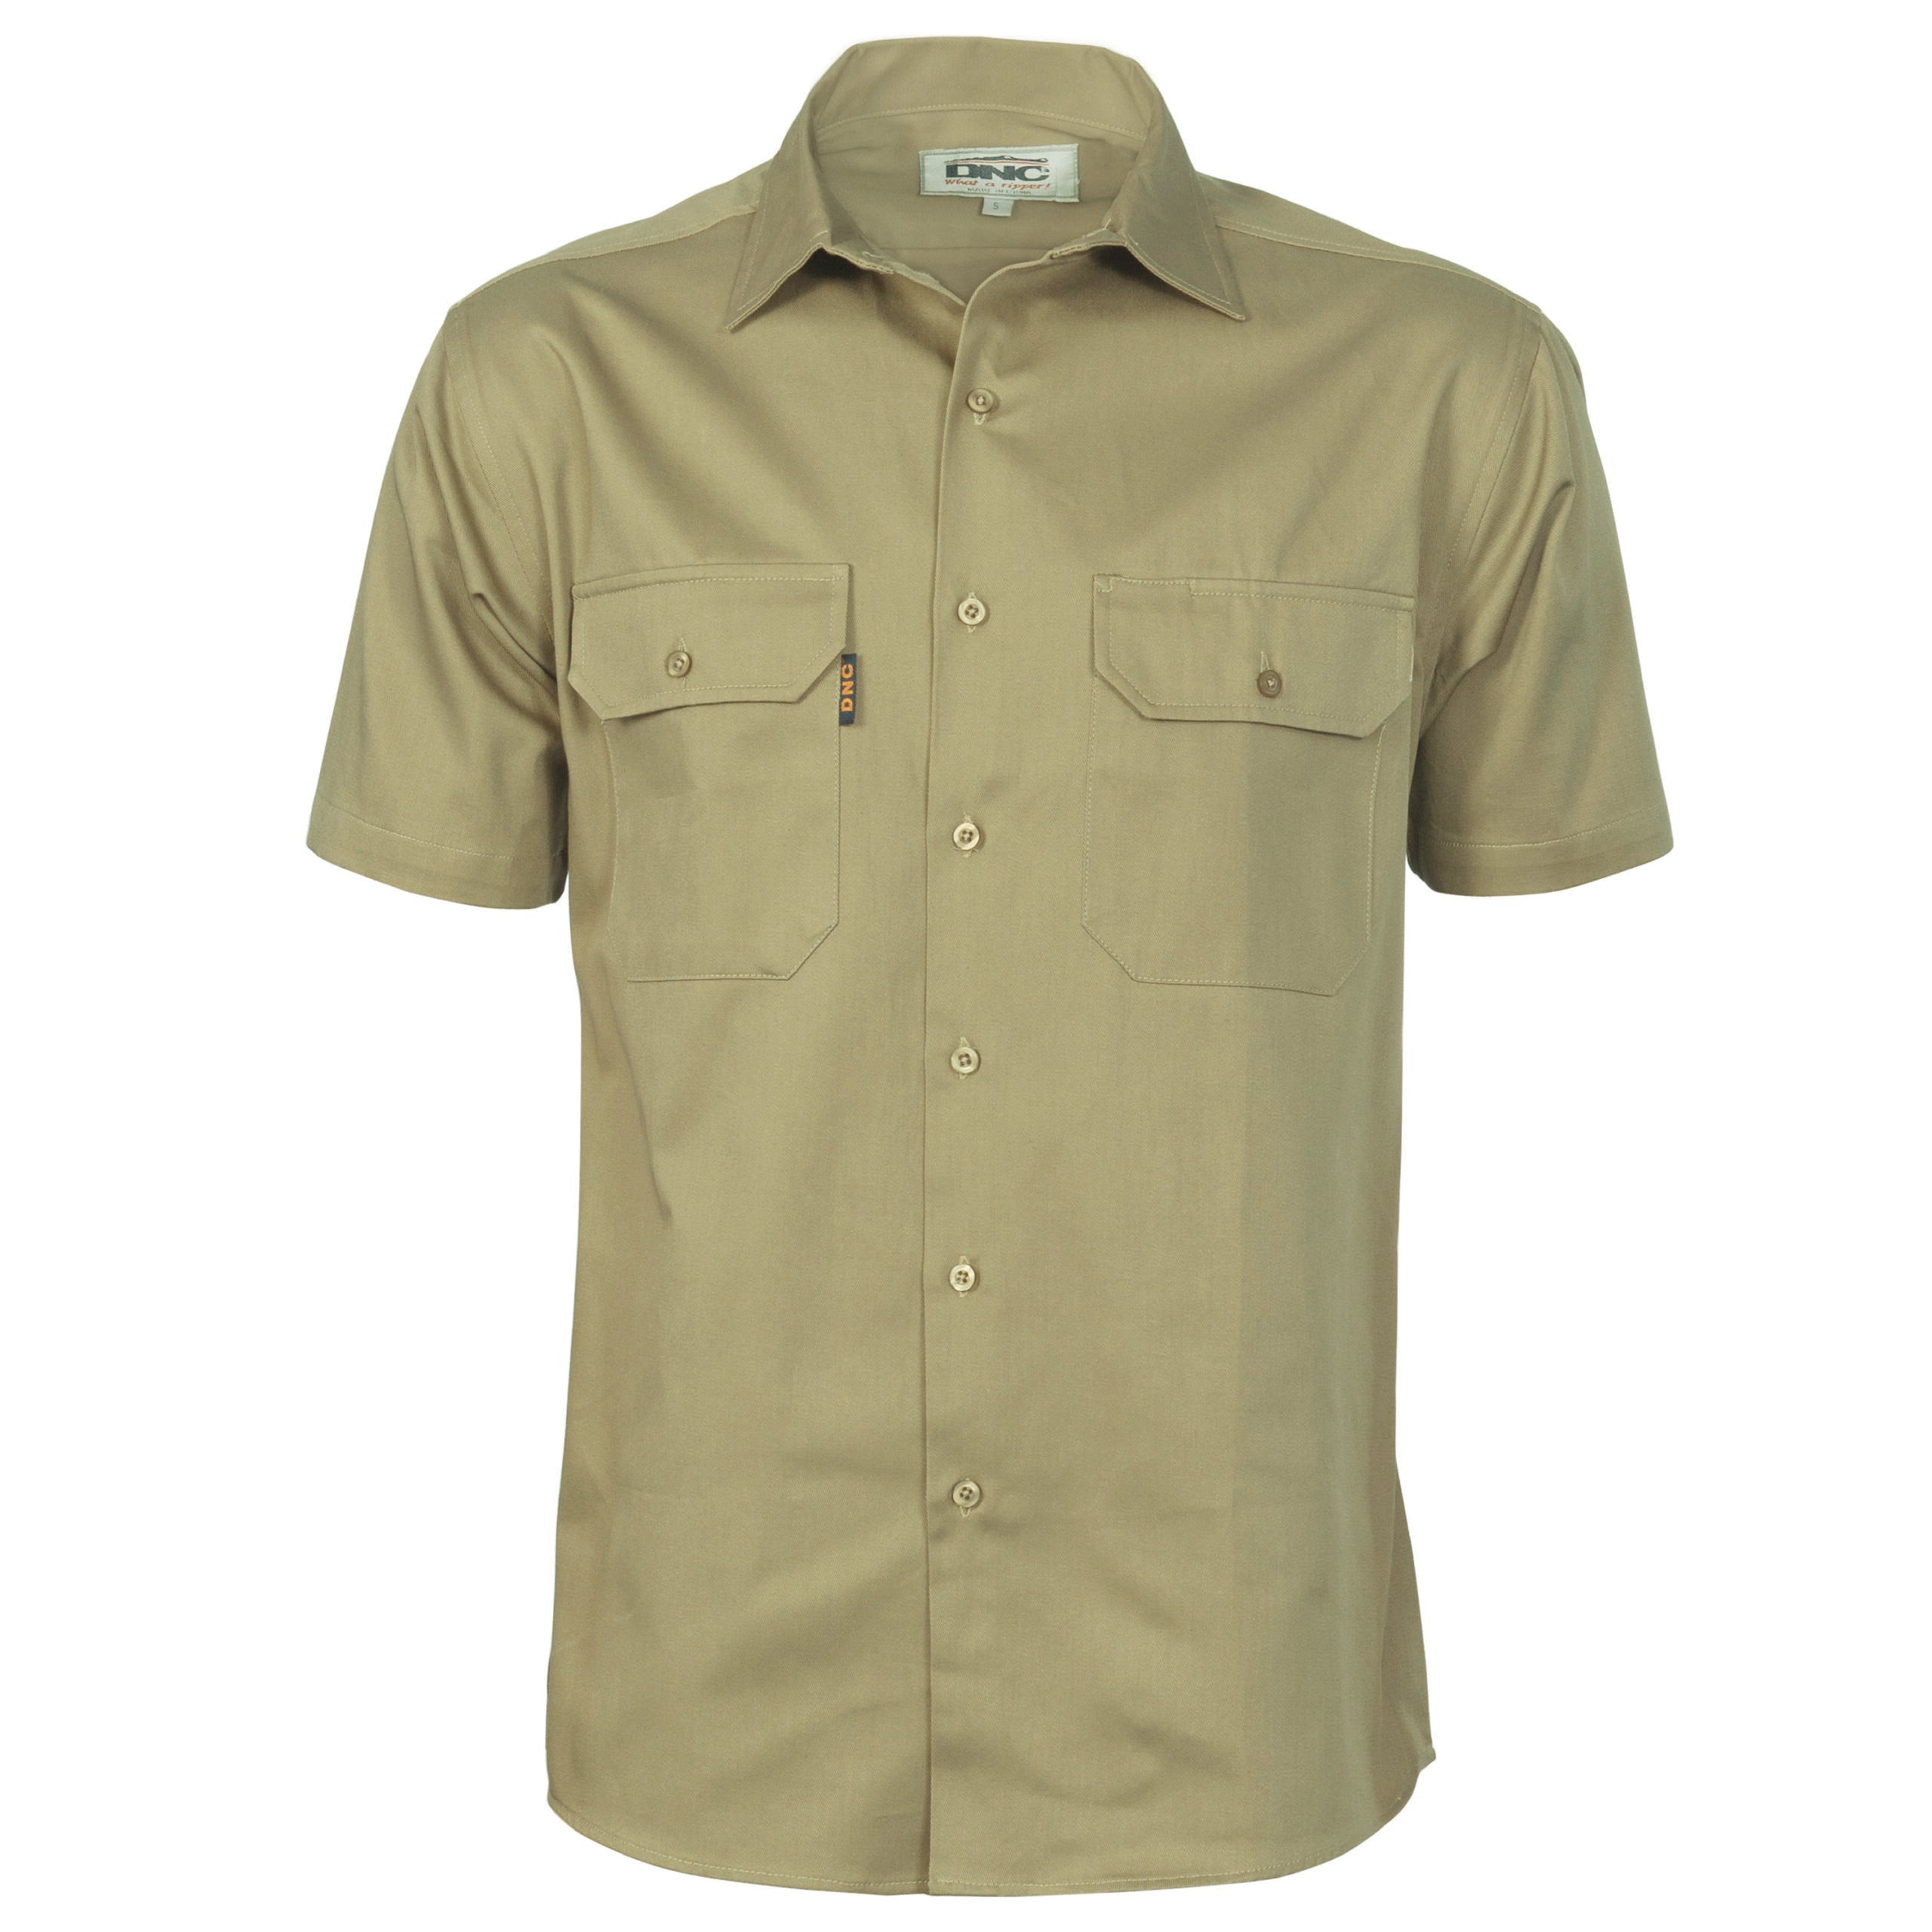 DNC 3201 Cotton Drill Work Shirt Short Sleeve